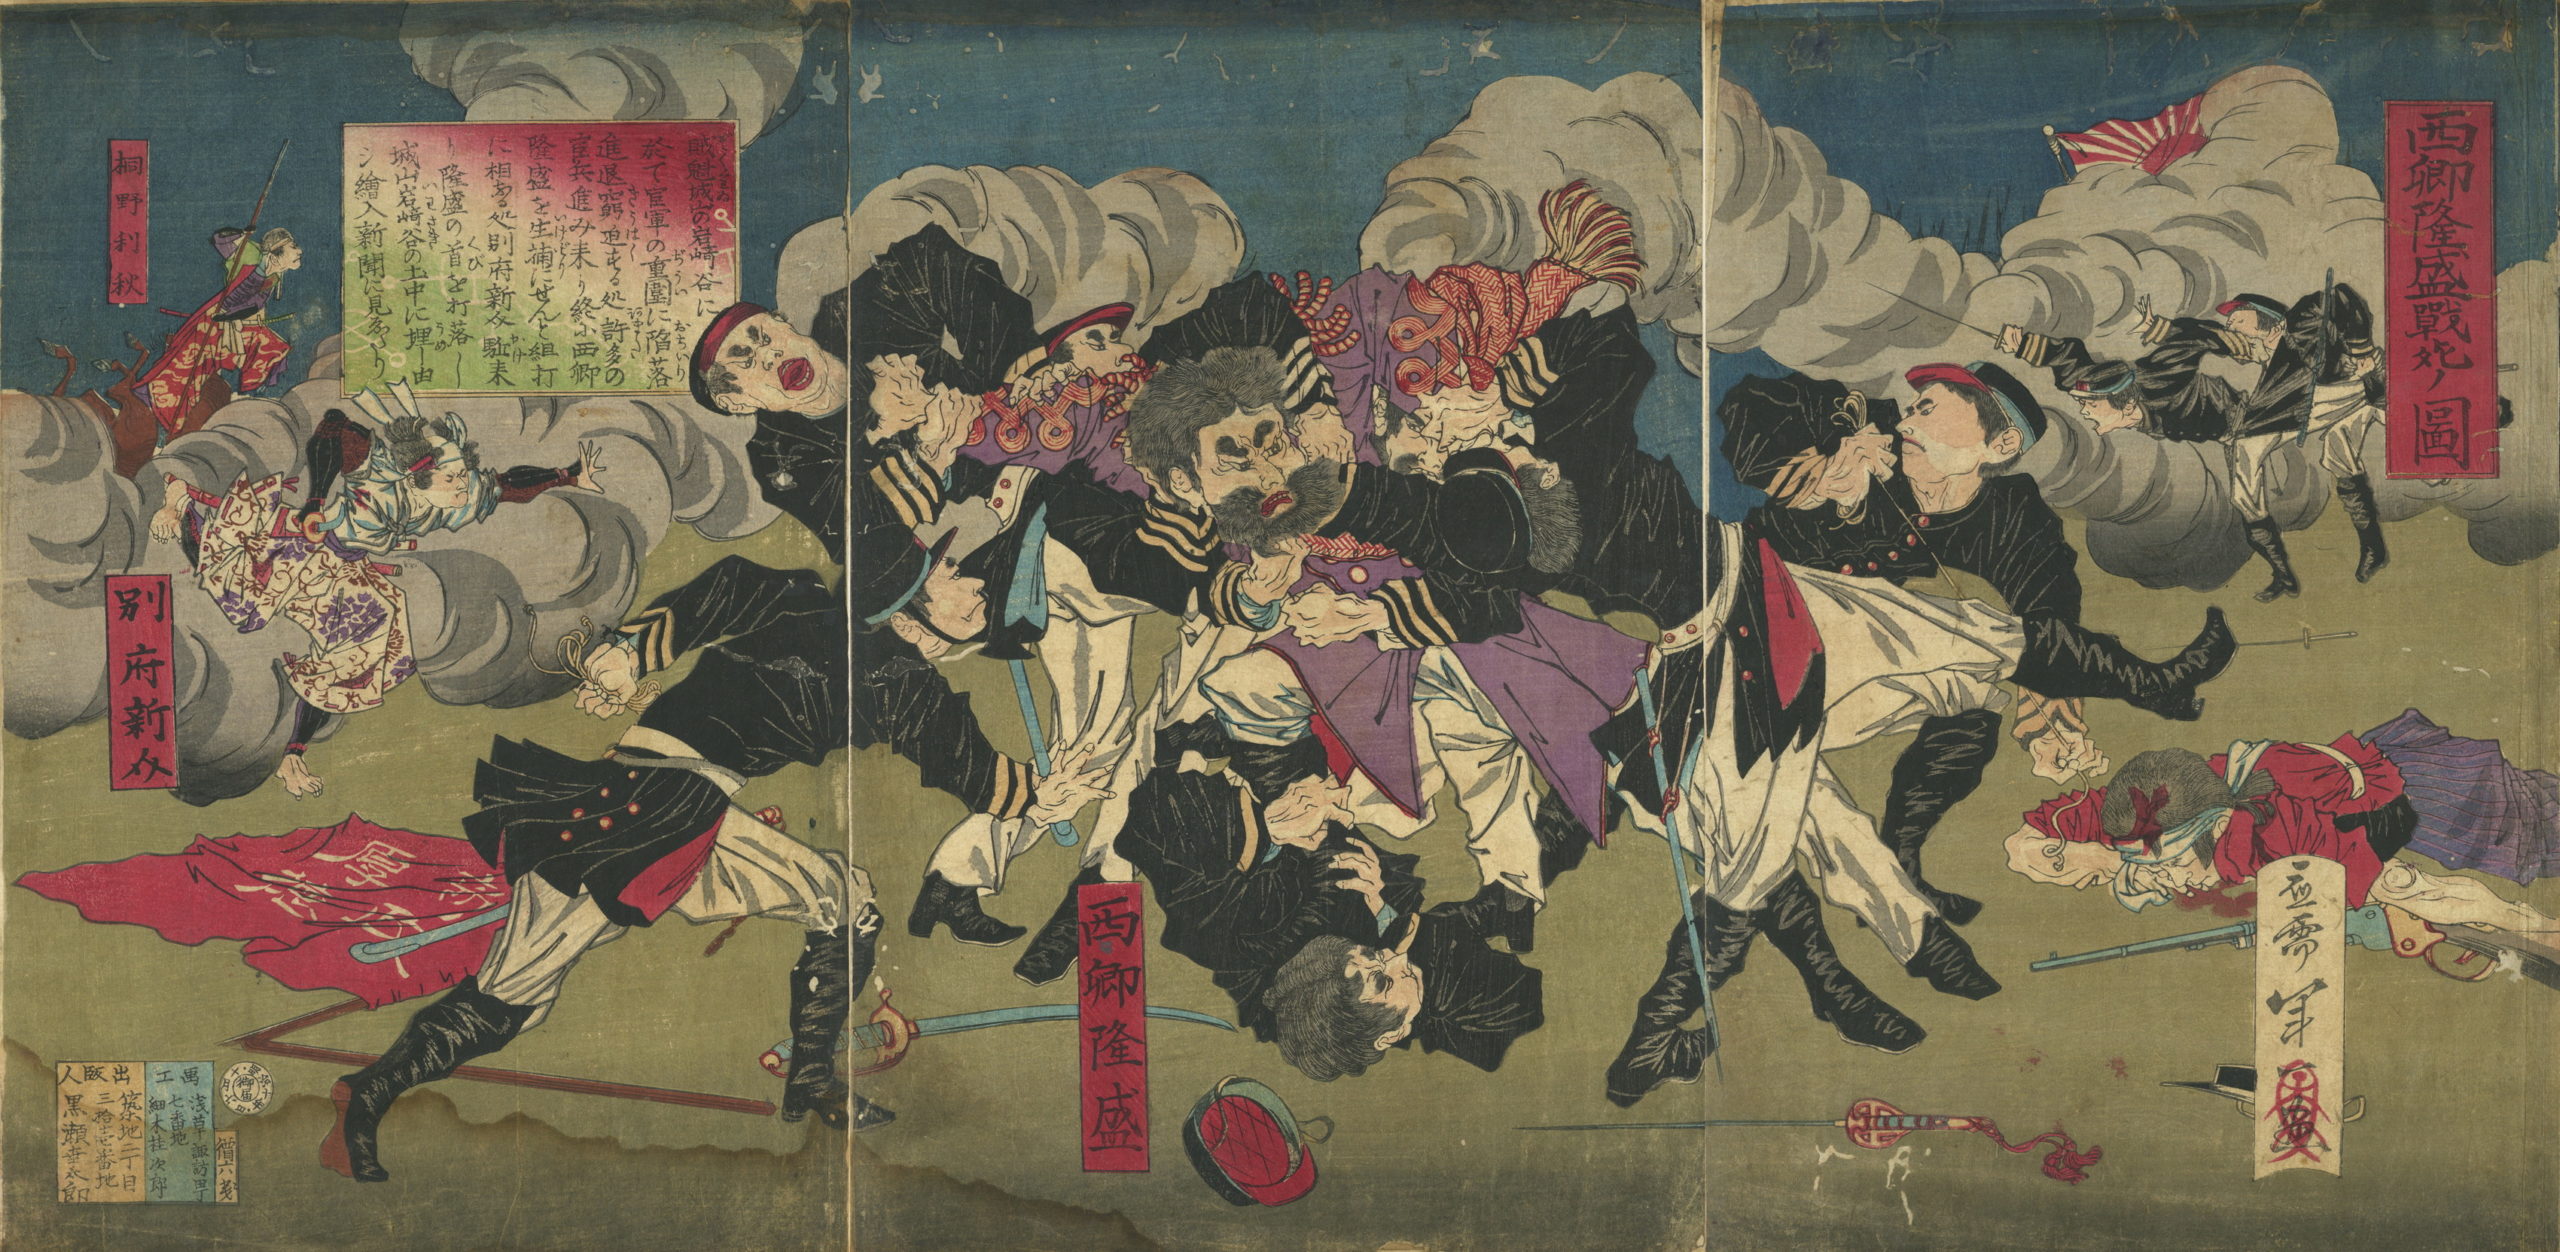 1877-10-06 年一「西郷隆盛戦死ノ図」